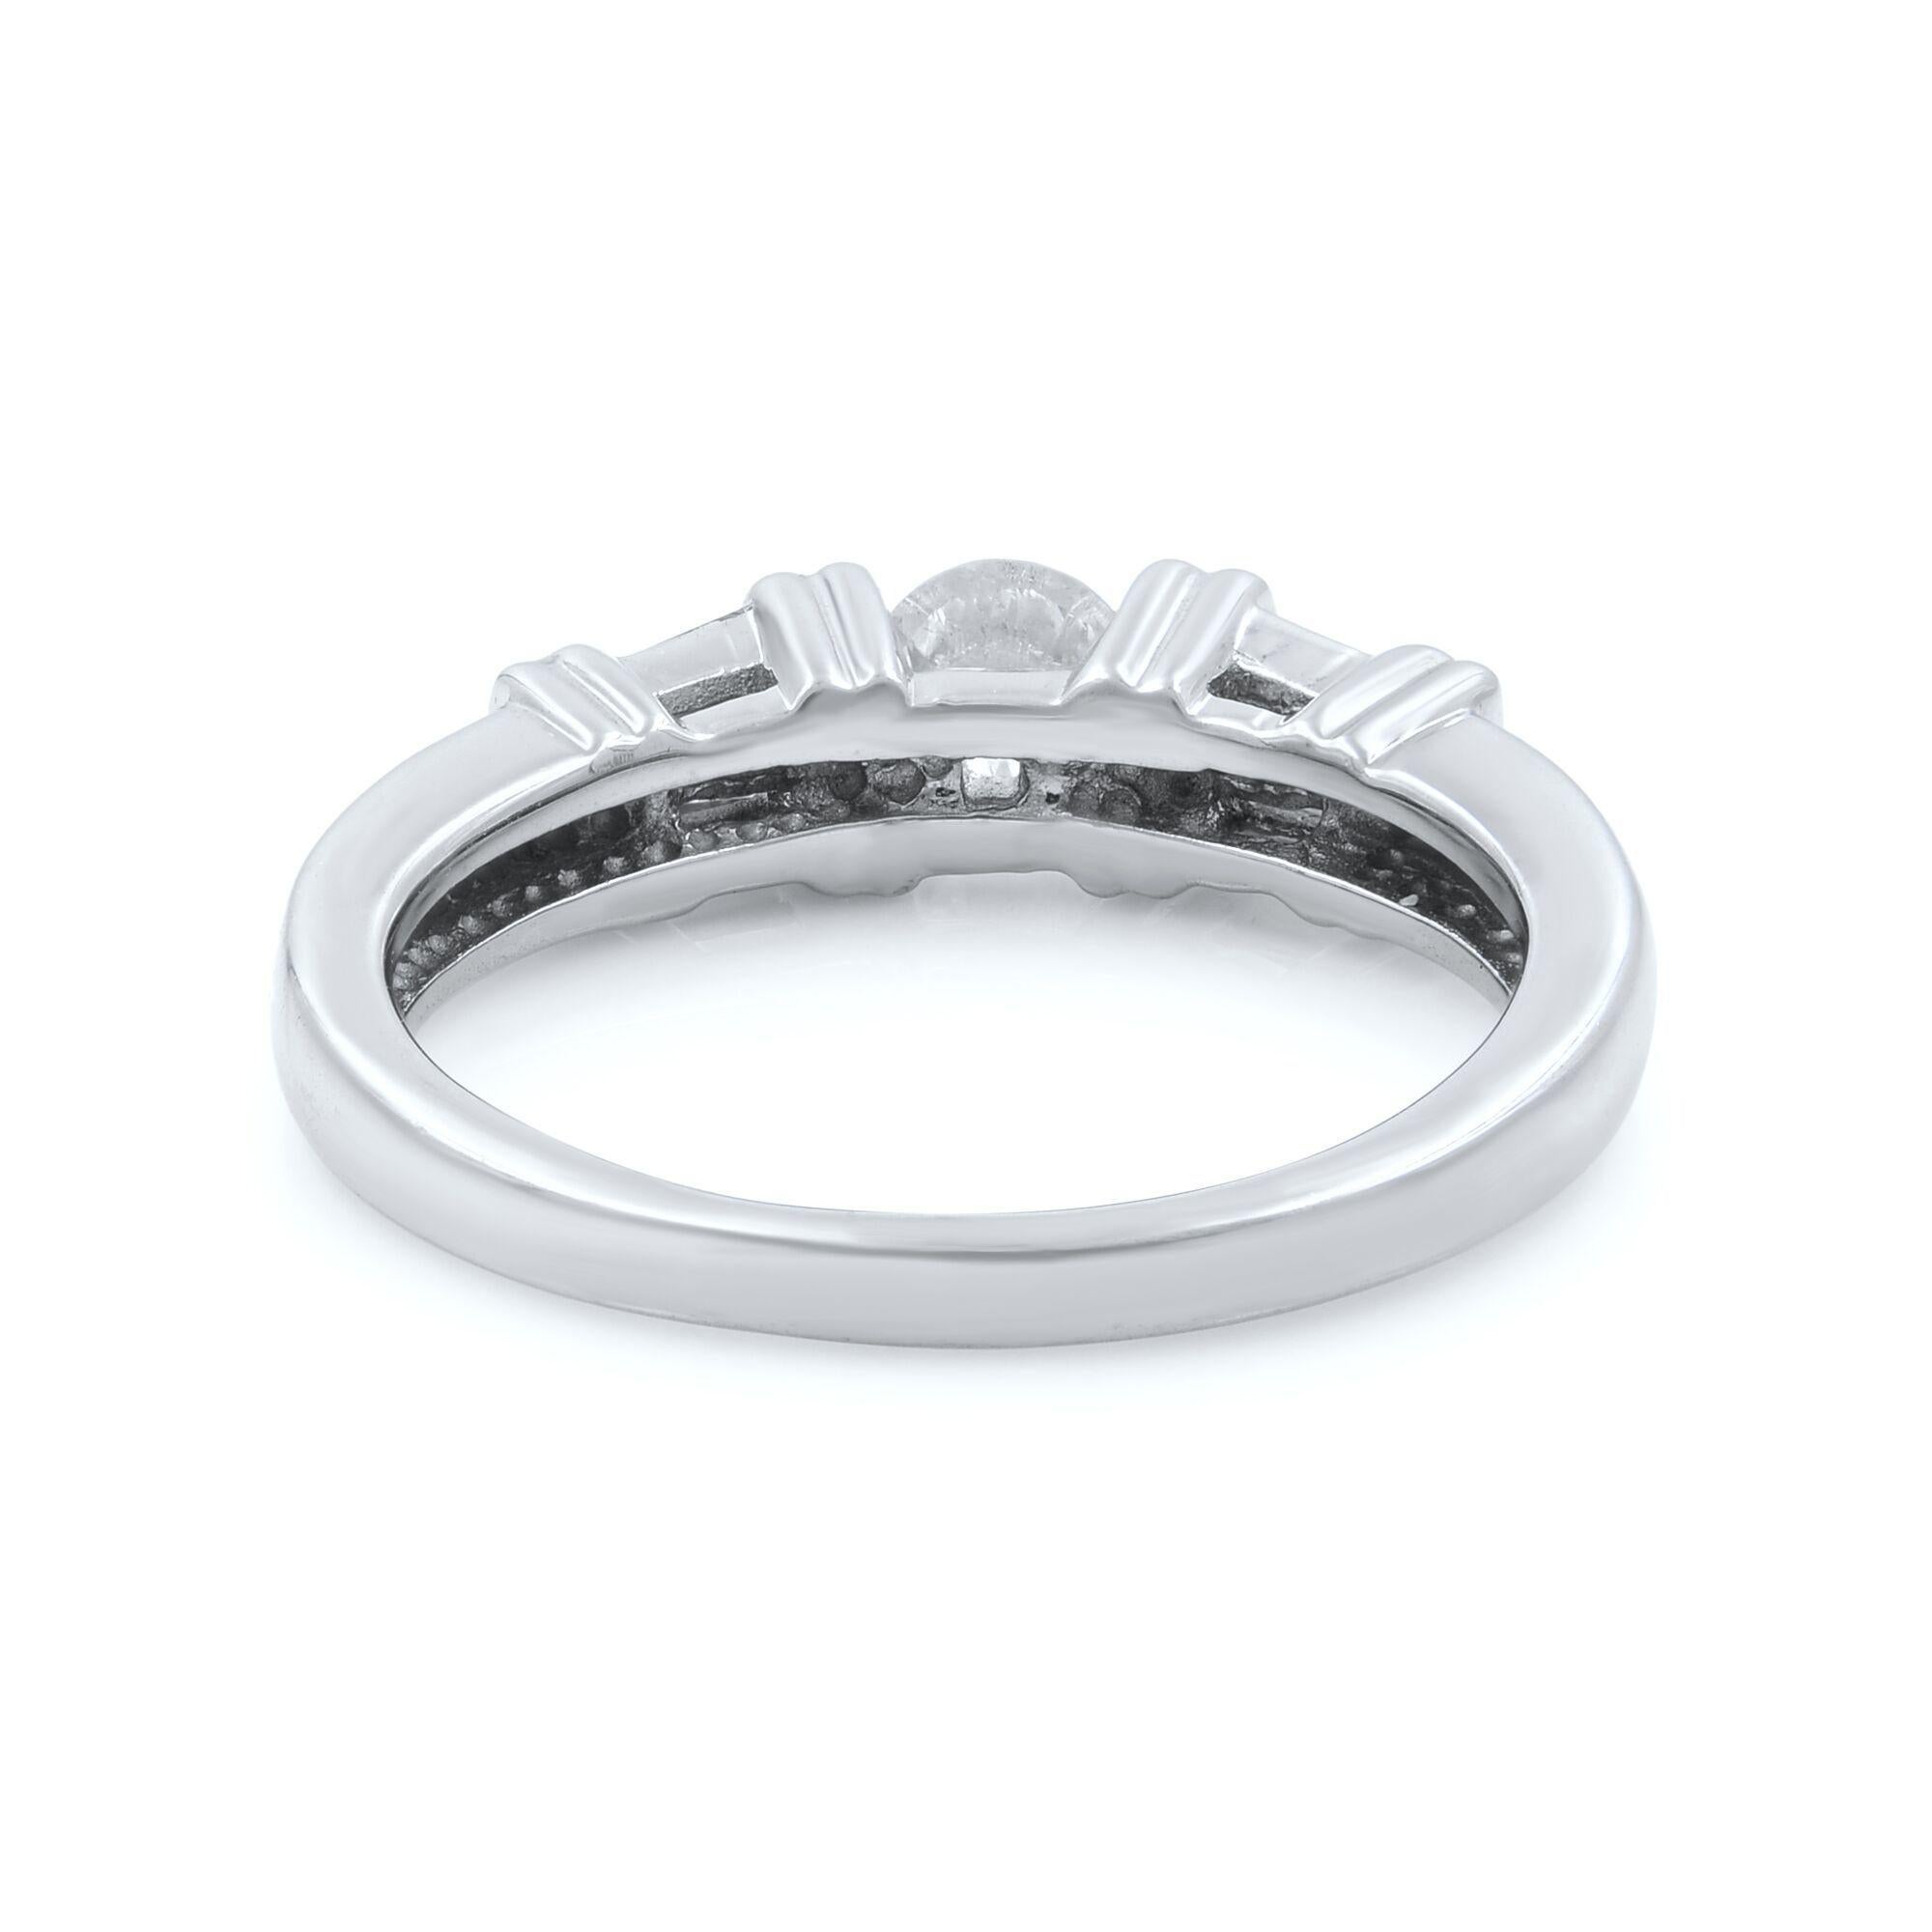 Modern Rahel Koen Diamond Engagement Ring 14K White Gold 1.00 Cttw For Sale